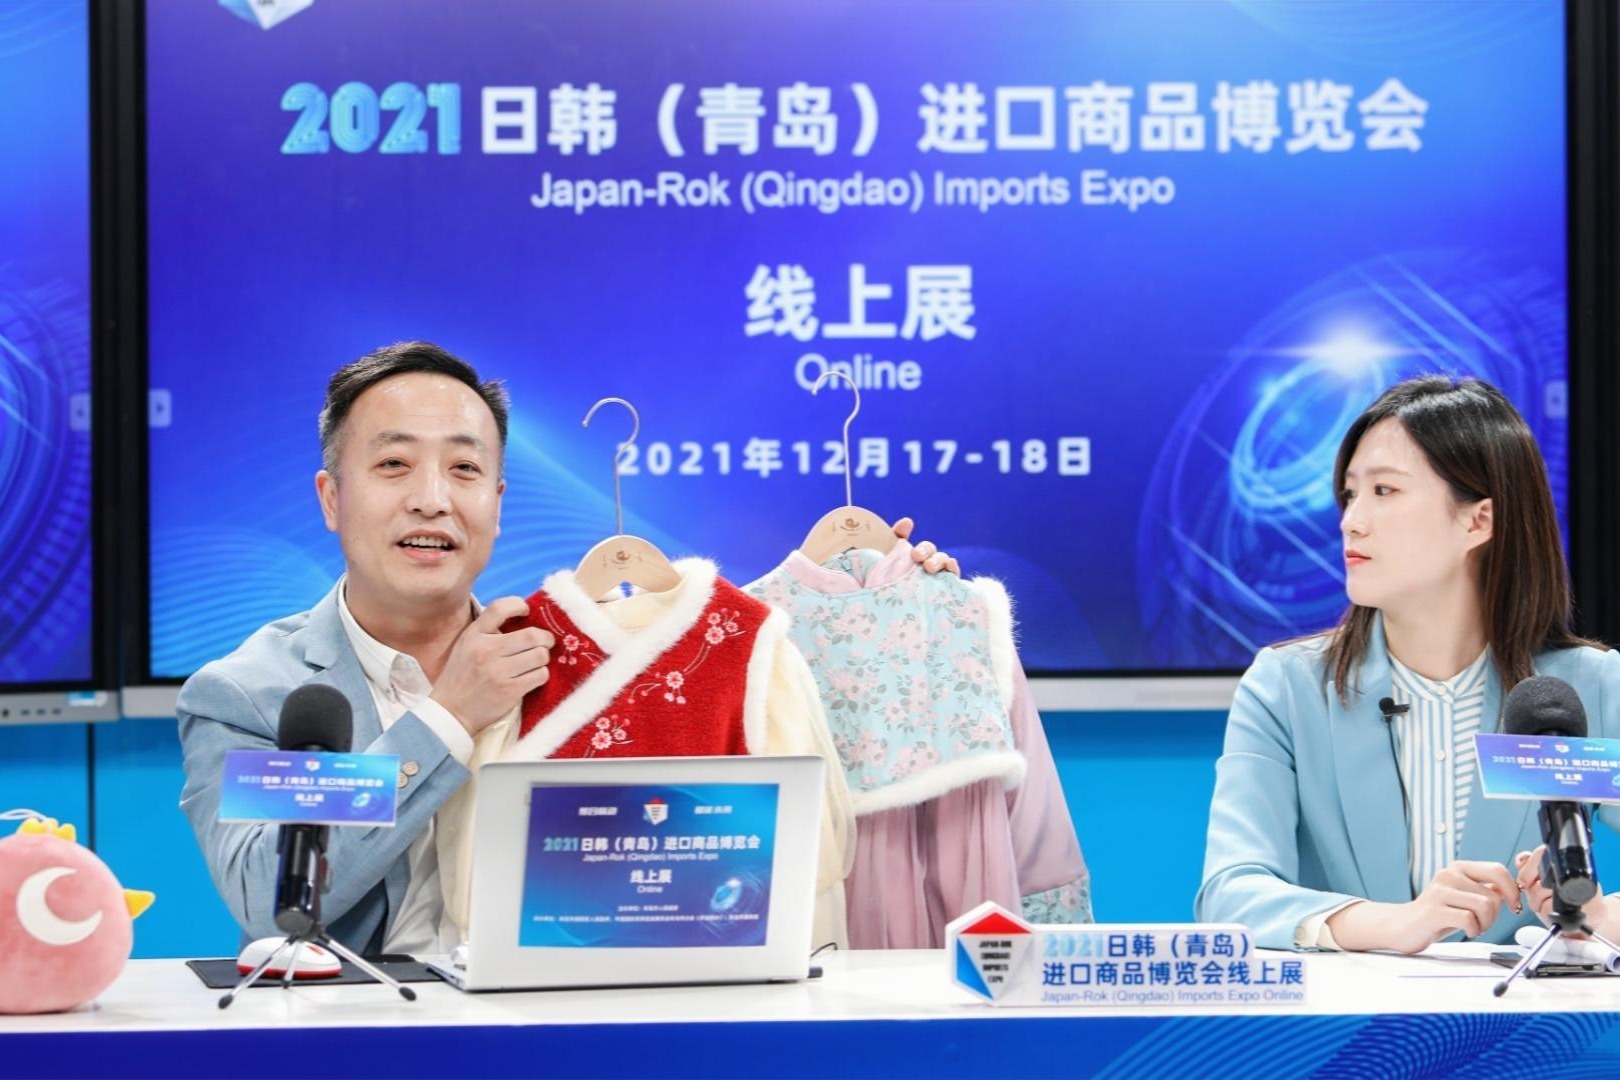 青岛吉美誉服饰有限公司亮相2021日韩青岛进口商品博览会线上展